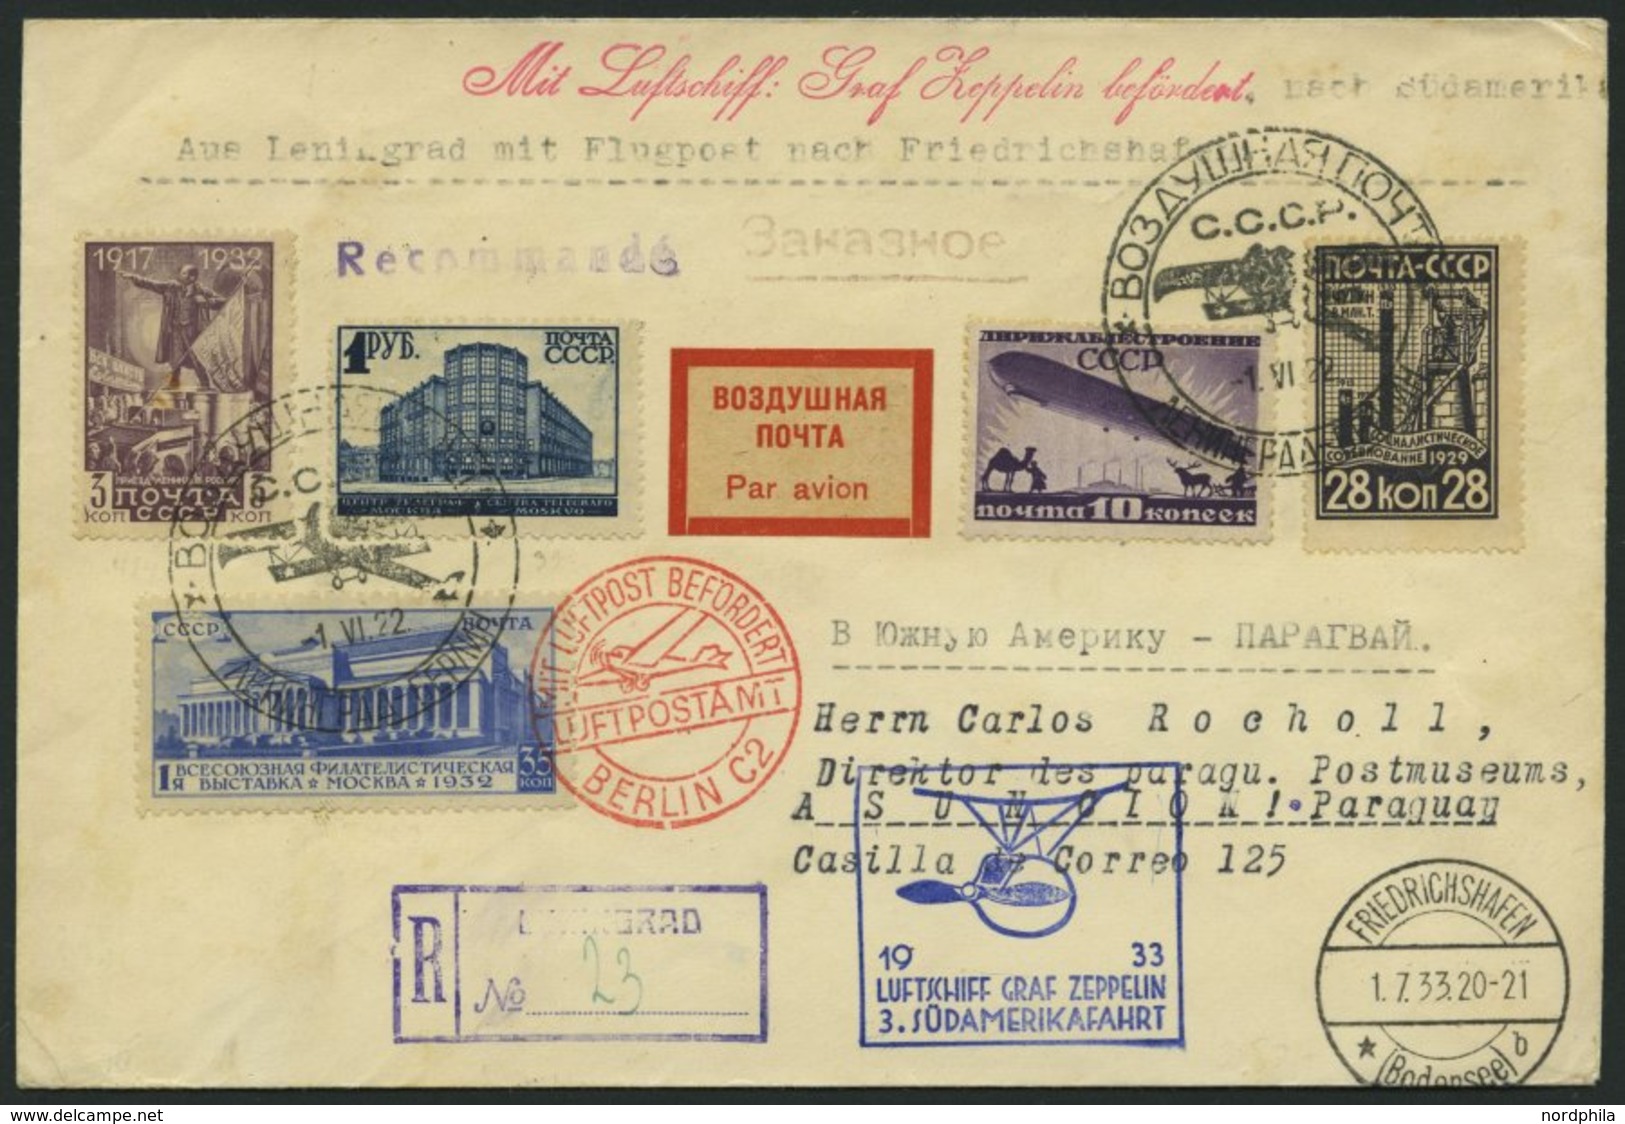 ZULEITUNGSPOST 219 BRIEF, Russland: 1933, 3. Südamerikafahrt, Einschreibbrief, Prachtbrief - Zeppelin